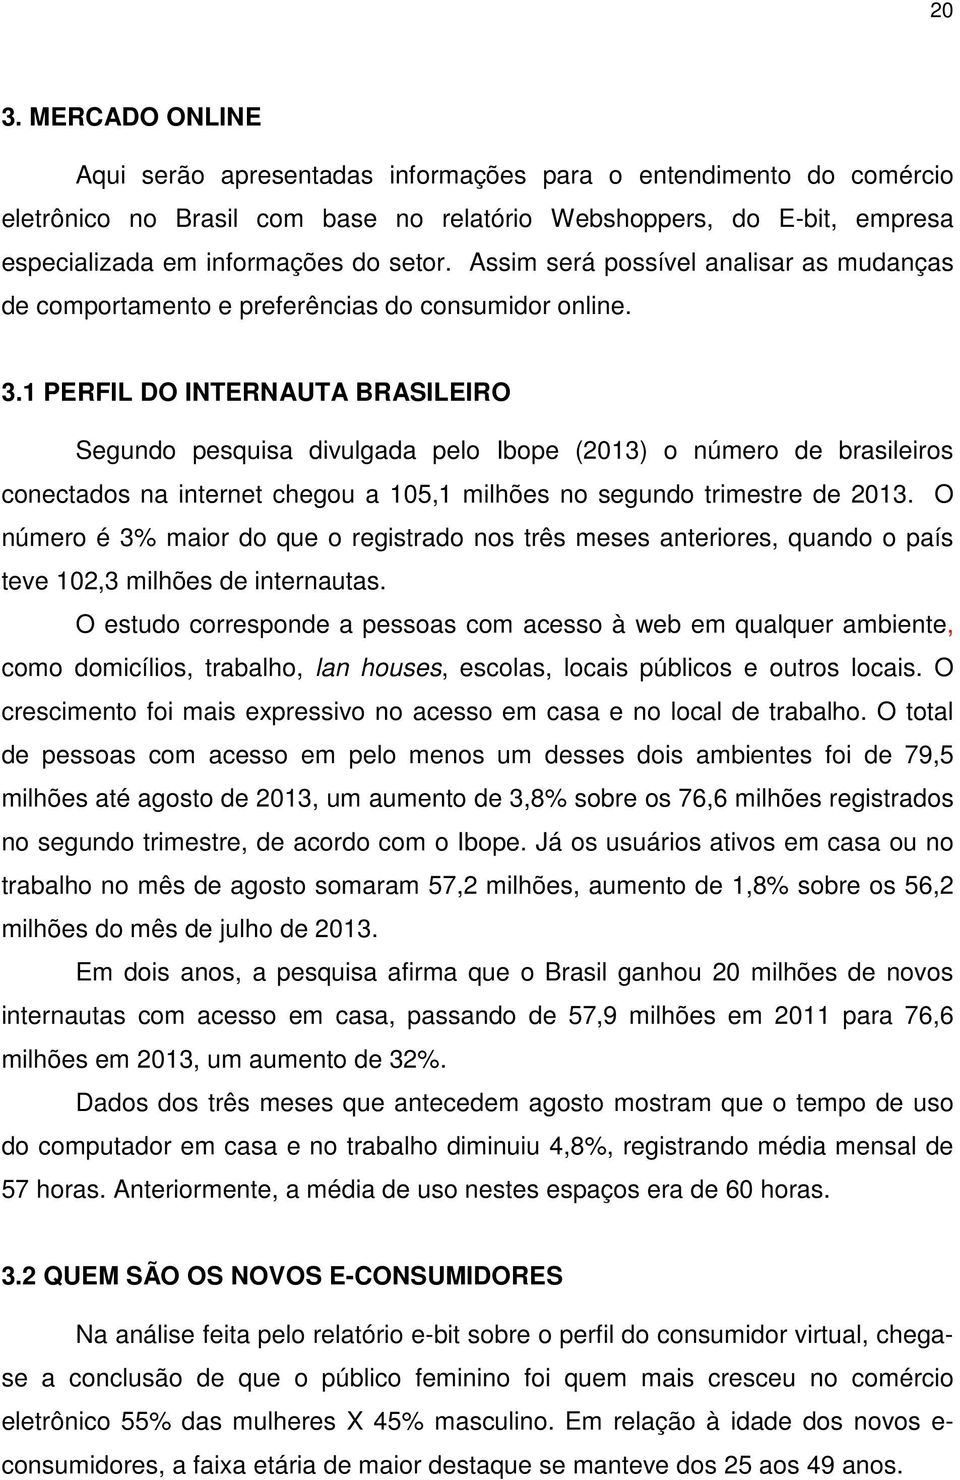 1 PERFIL DO INTERNAUTA BRASILEIRO Segundo pesquisa divulgada pelo Ibope (2013) o número de brasileiros conectados na internet chegou a 105,1 milhões no segundo trimestre de 2013.